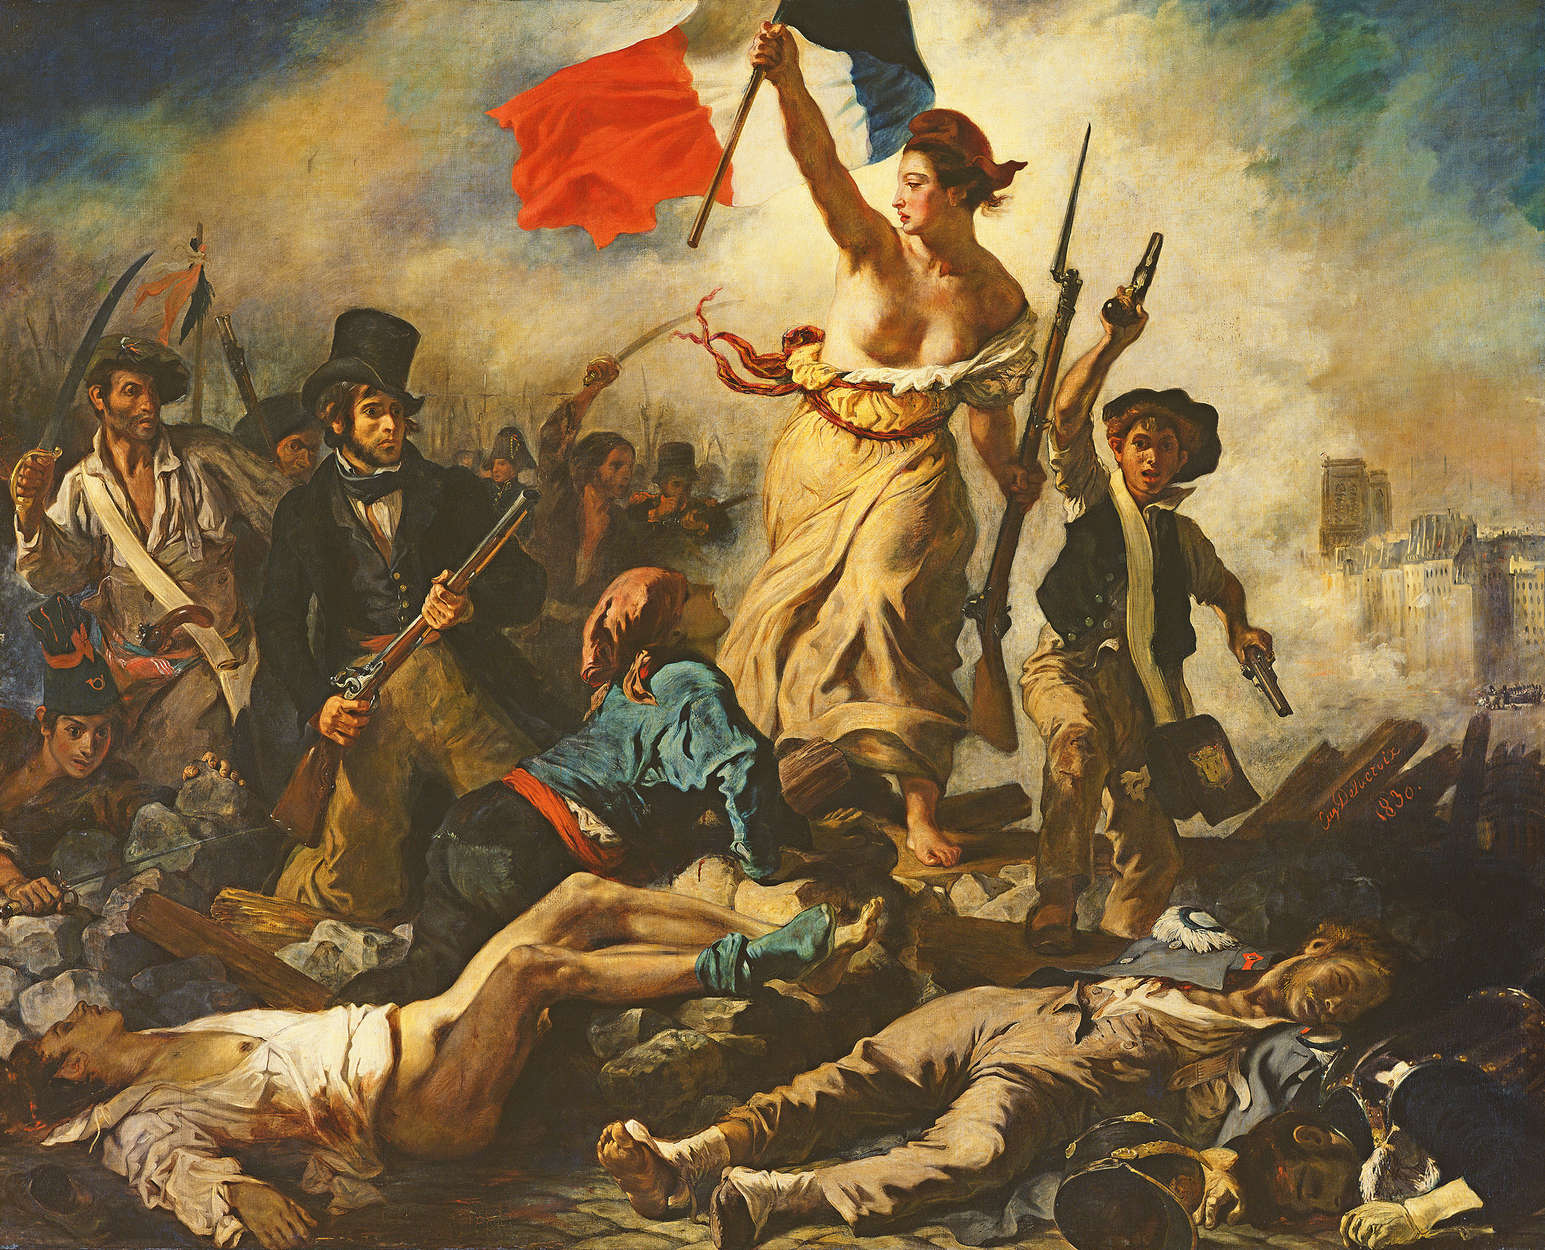             Mural "La libertad guiando al pueblo" de Eugène Delacroix
        